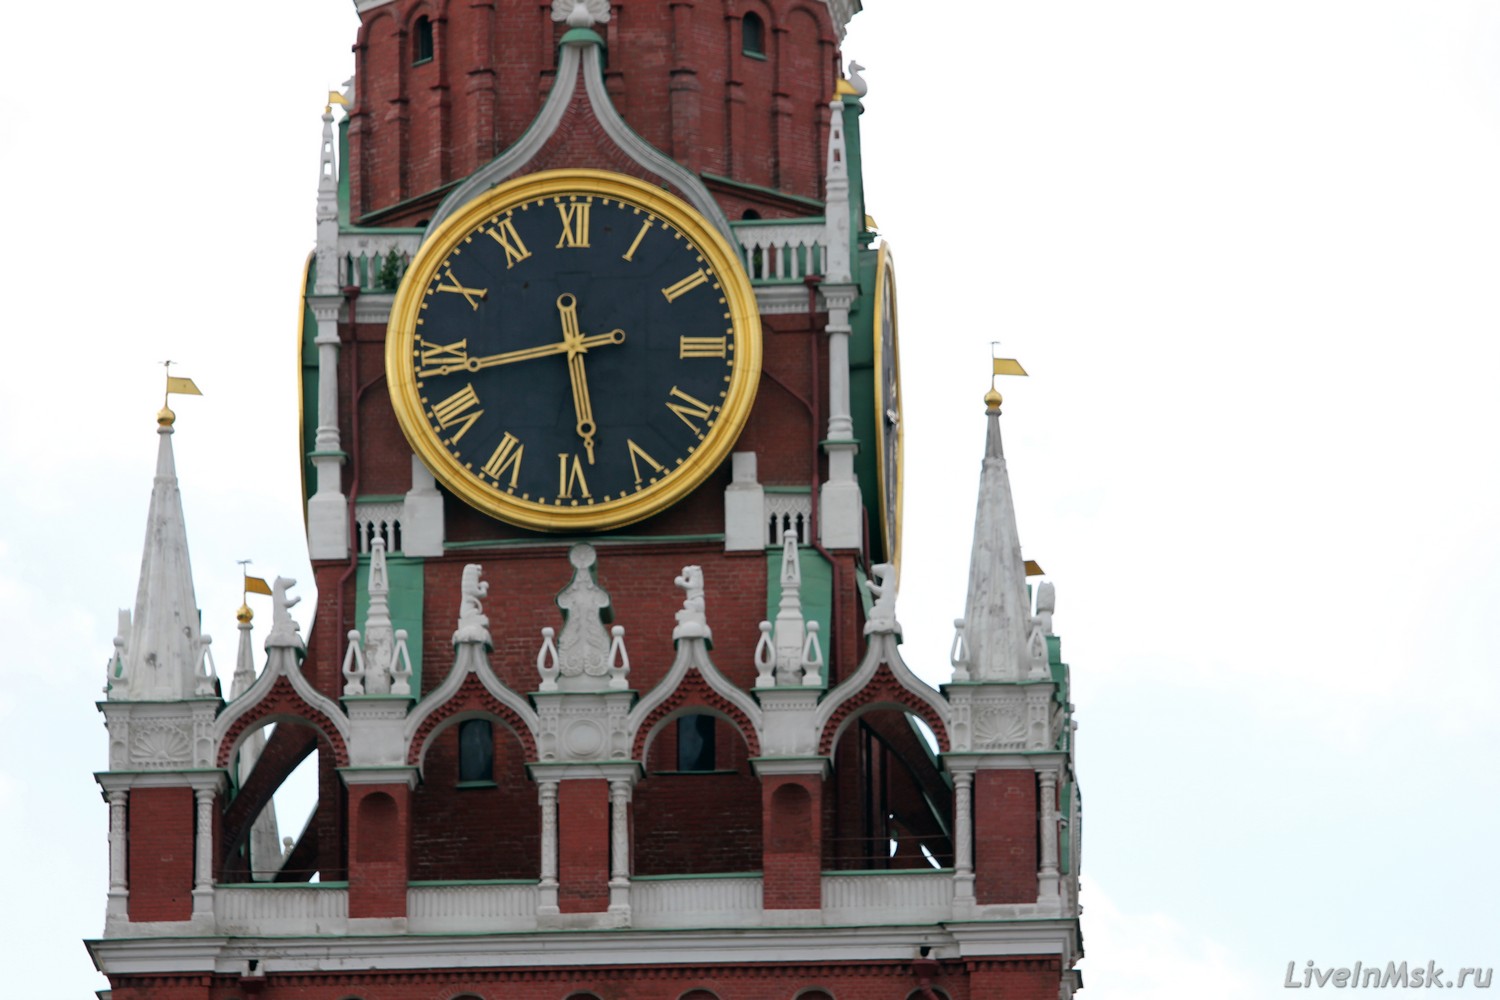 Часы на Спасской башне, фото 2015 года